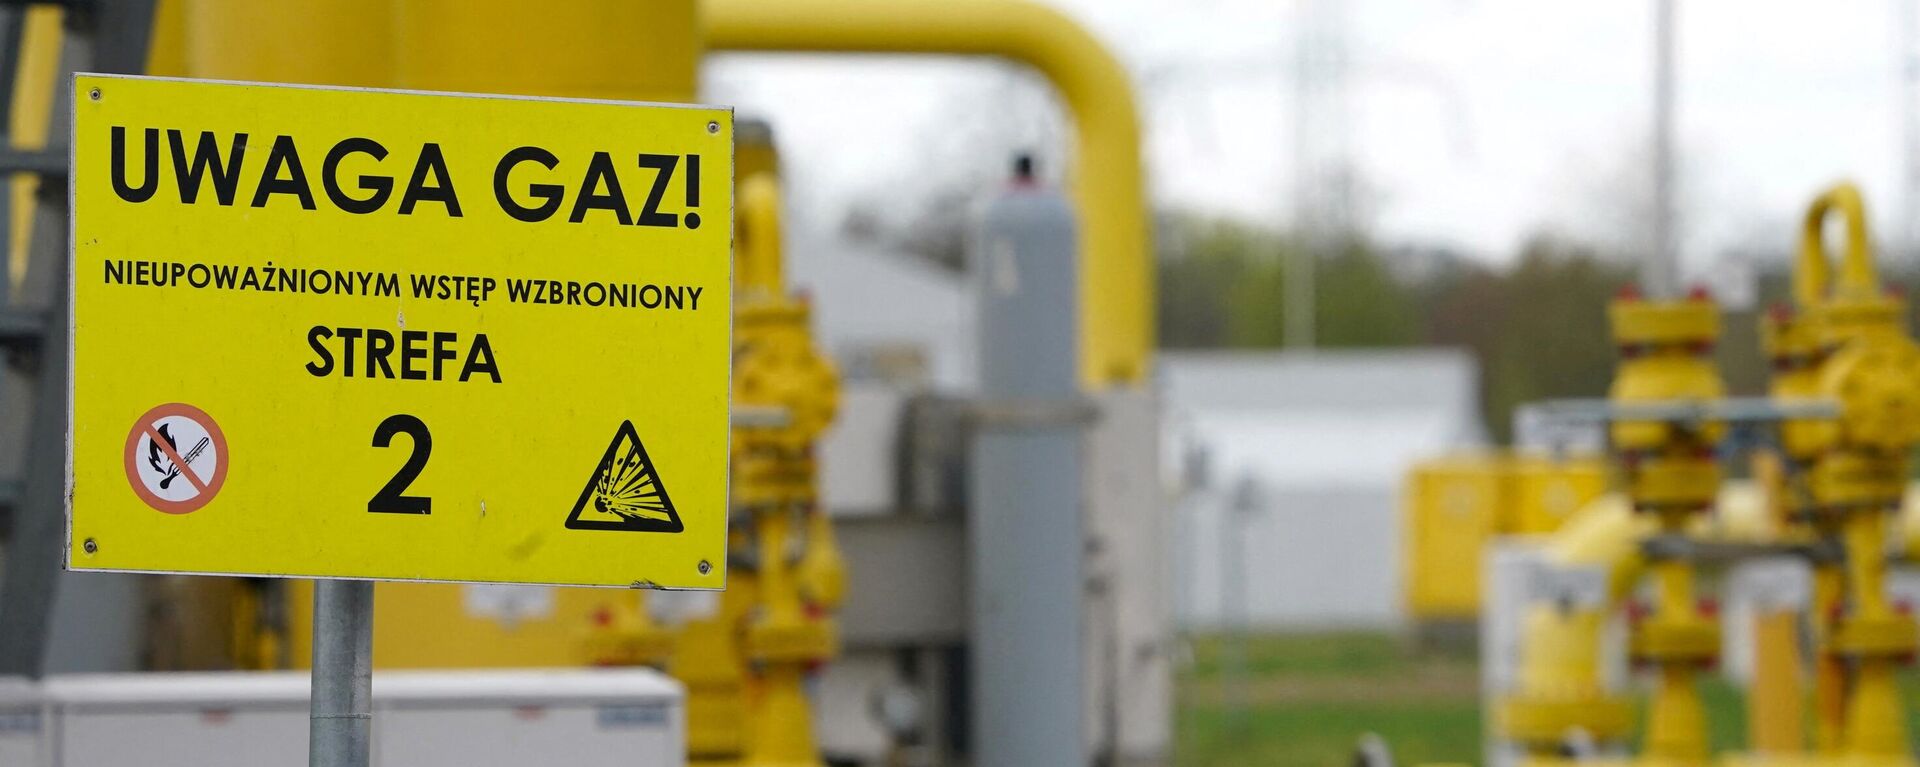 A inscrição em uma placa diz 'Uwaga gaz' (gás de atenção) no ponto de transmissão de gás em Rembelszczyzna, perto de Varsóvia, em 27 de abril de 2022. - Sputnik Brasil, 1920, 02.06.2022